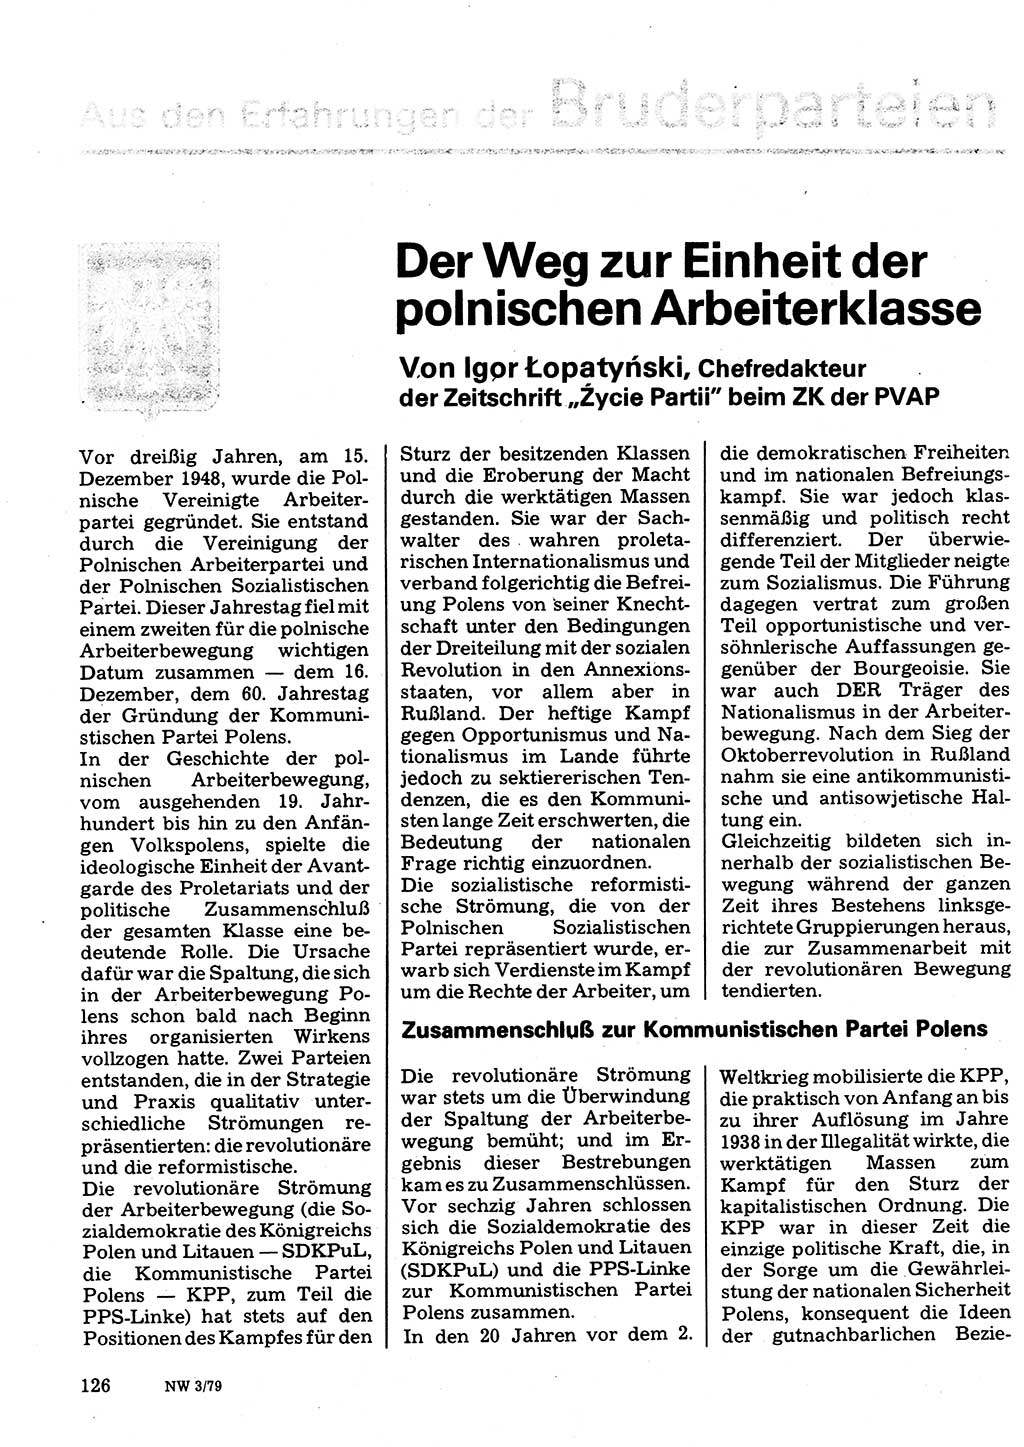 Neuer Weg (NW), Organ des Zentralkomitees (ZK) der SED (Sozialistische Einheitspartei Deutschlands) für Fragen des Parteilebens, 34. Jahrgang [Deutsche Demokratische Republik (DDR)] 1979, Seite 126 (NW ZK SED DDR 1979, S. 126)